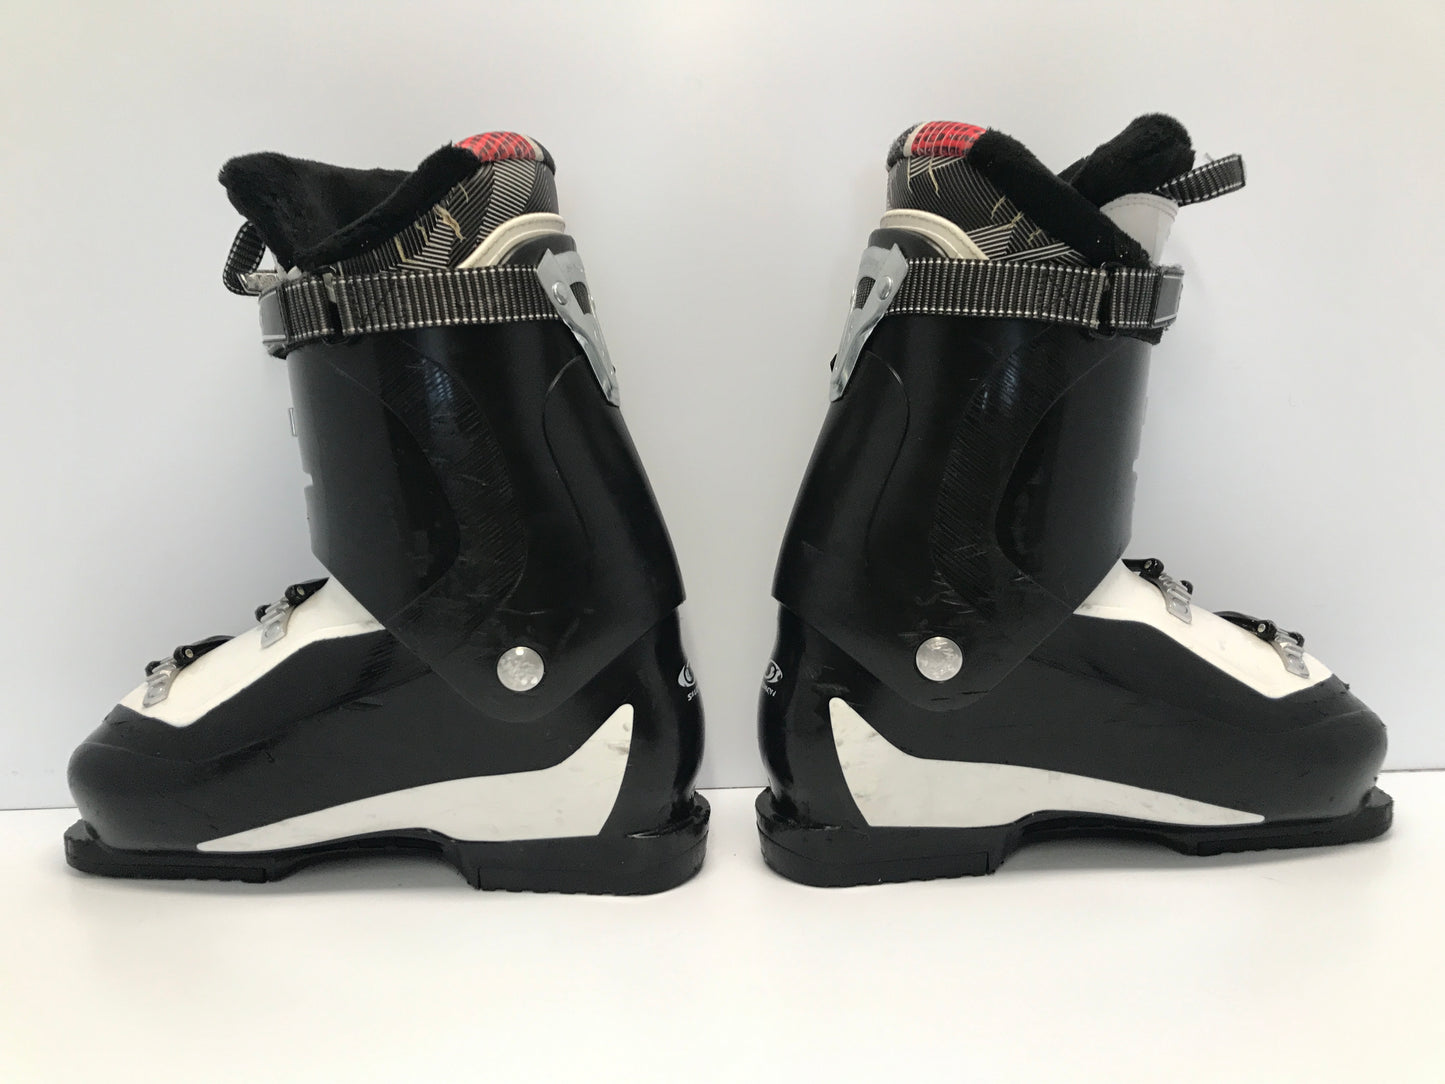 Ski Boots Mondo Size 28.0 Men's Size 10.5 Salomon 328 mm Black White